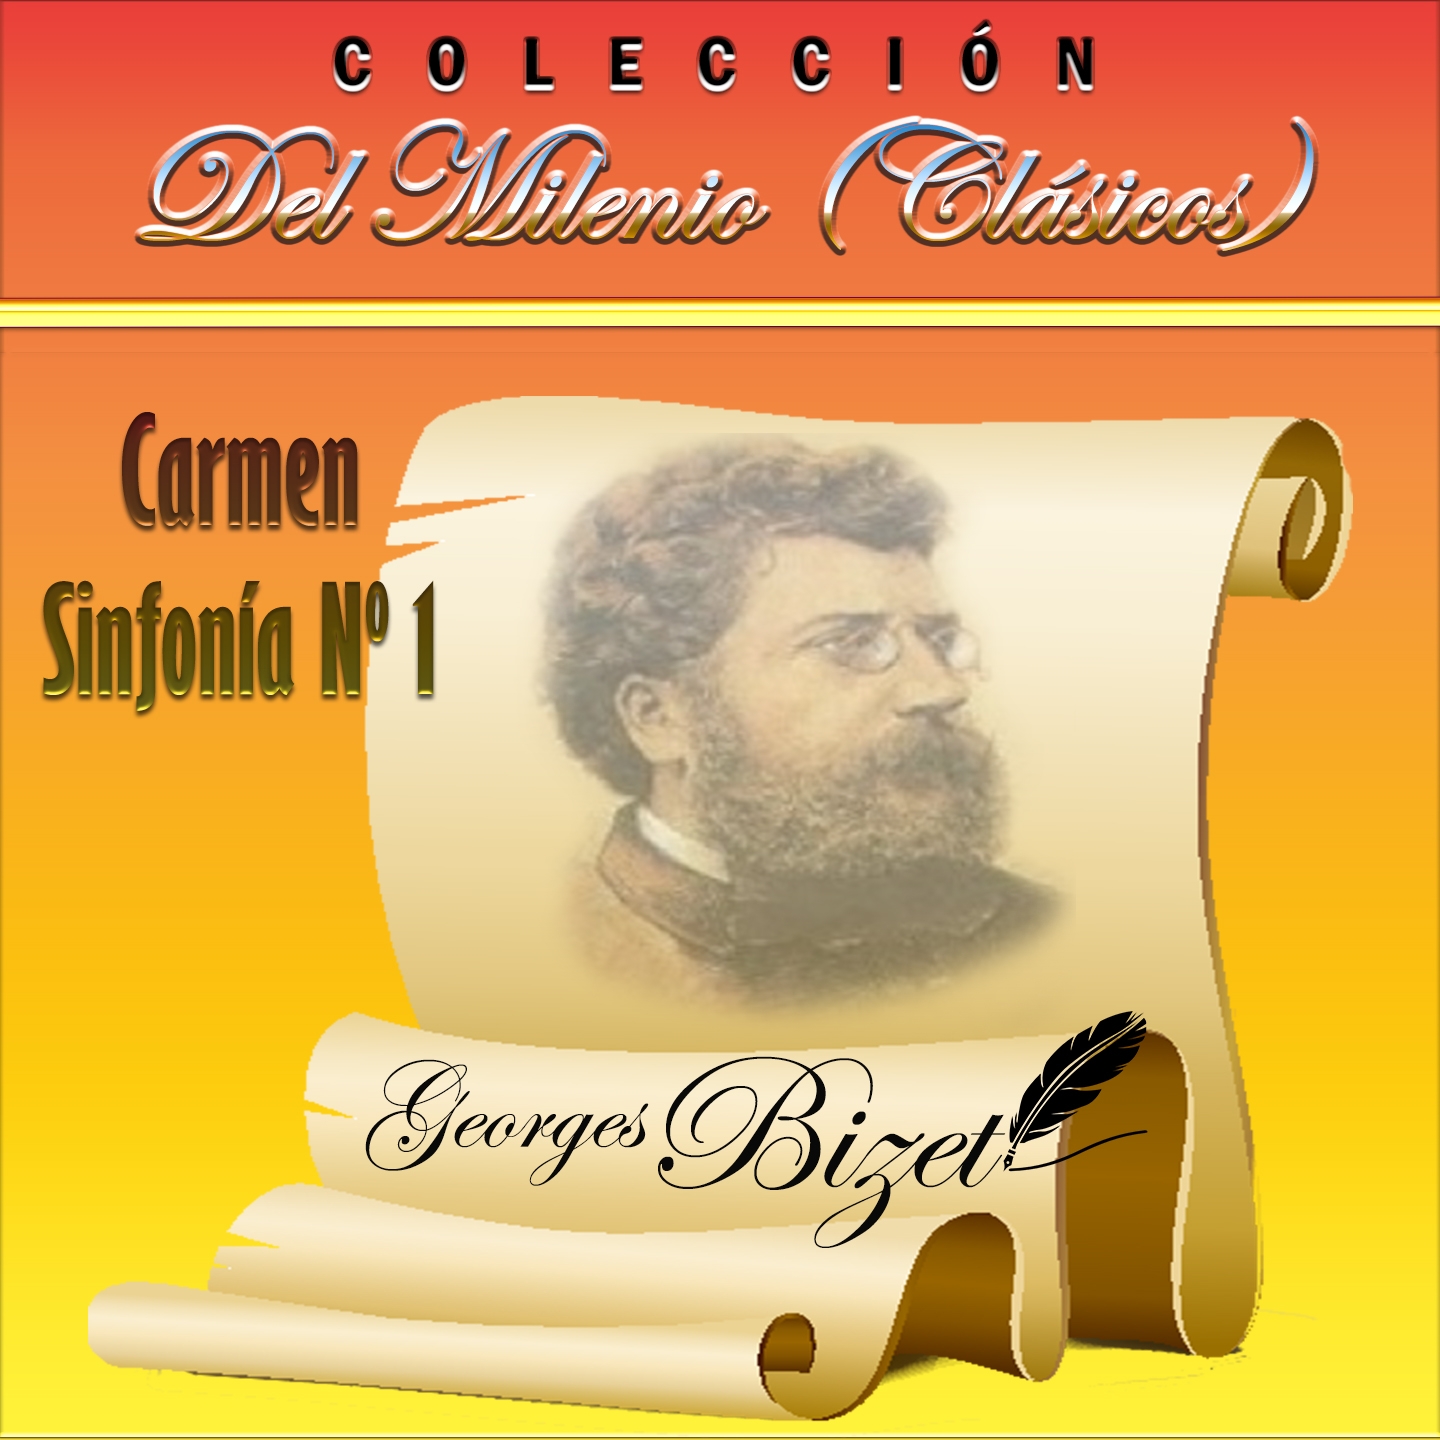 Colección del Milenio (Clásicos), Carmen, Sinfonía Nº 1